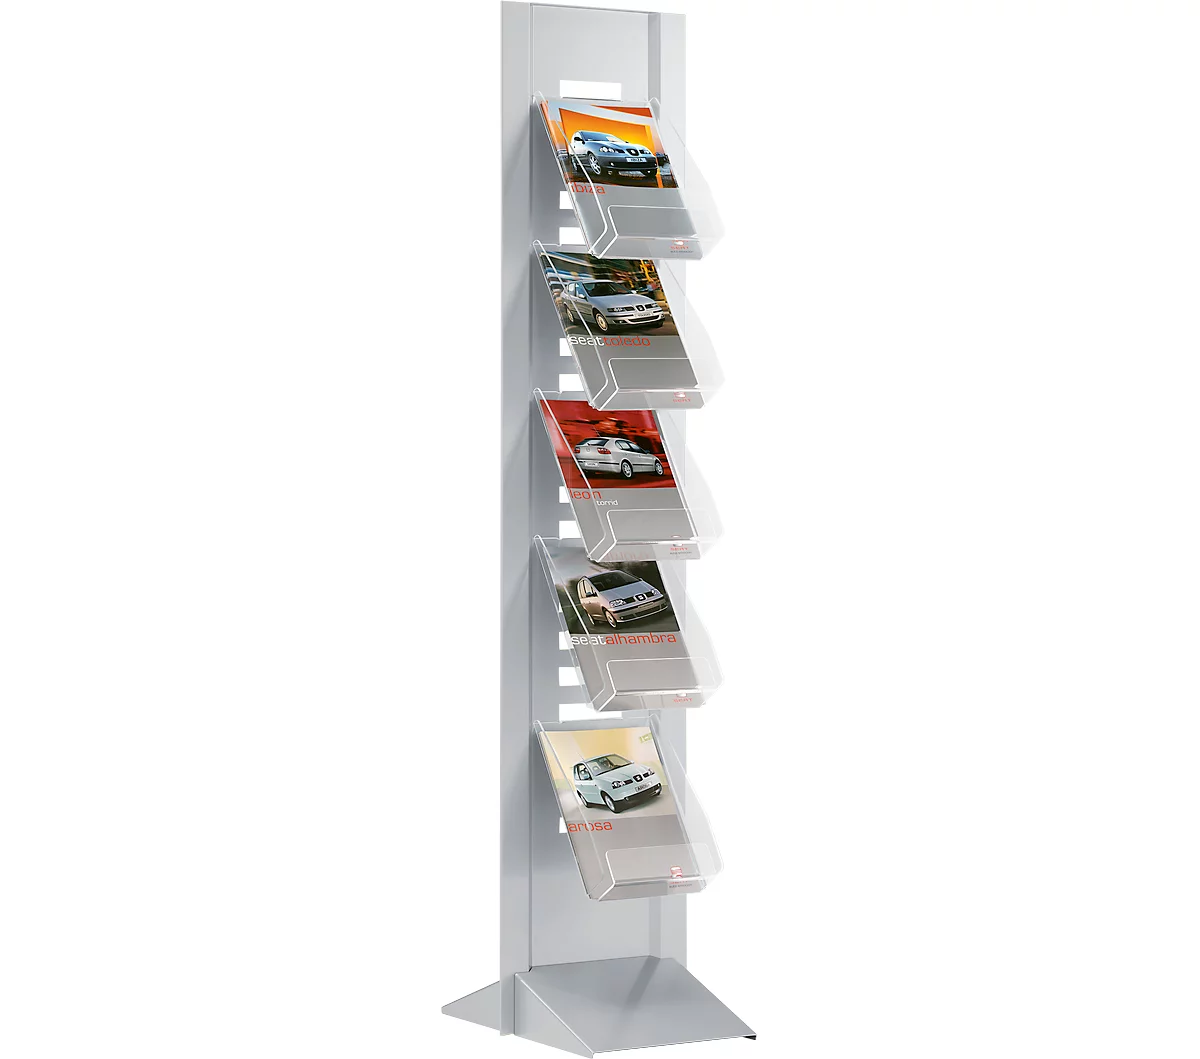 Schäfer Shop Select oferta completa pilar de folletos incl. 5 estantes para folletos 5 x DIN A4 